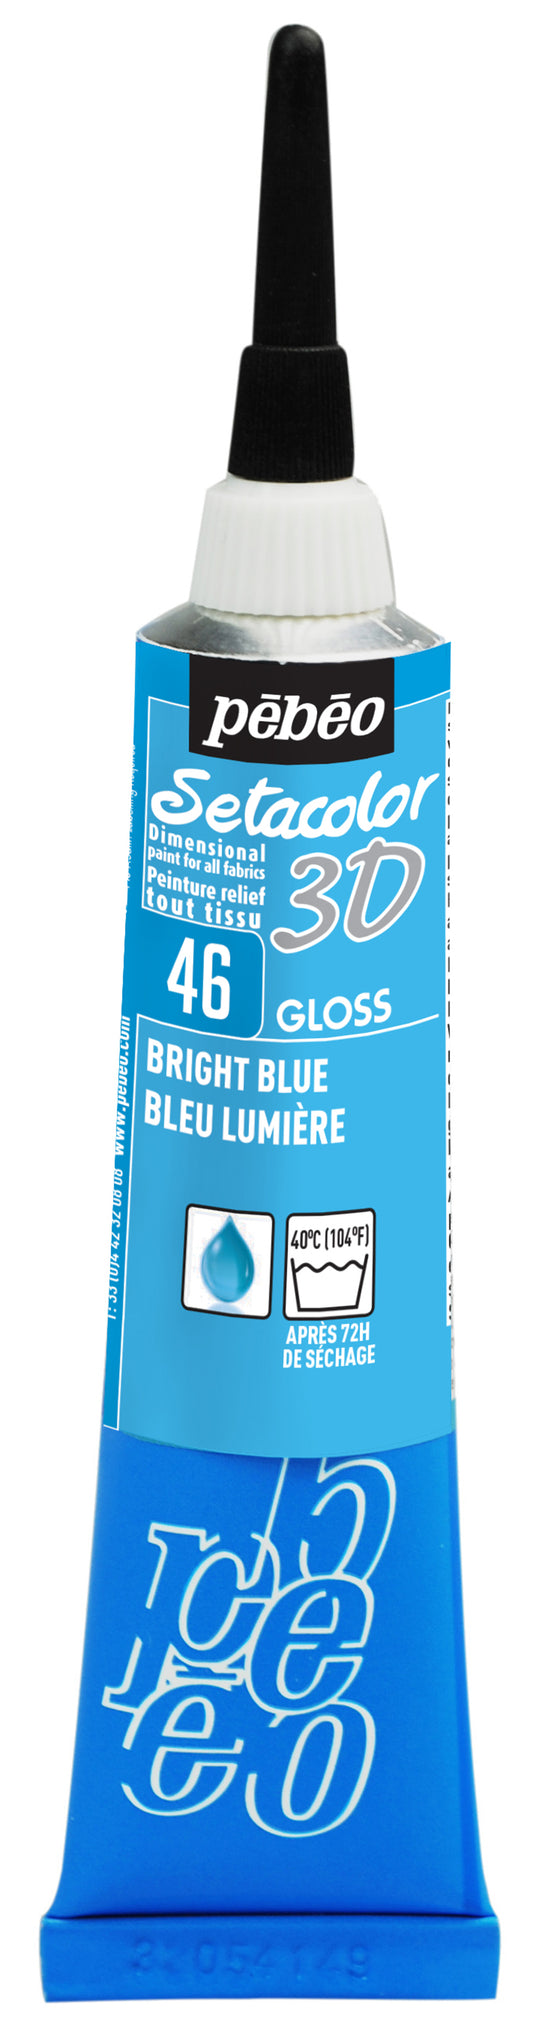 Setacolor 3D Brillante Blu Luce